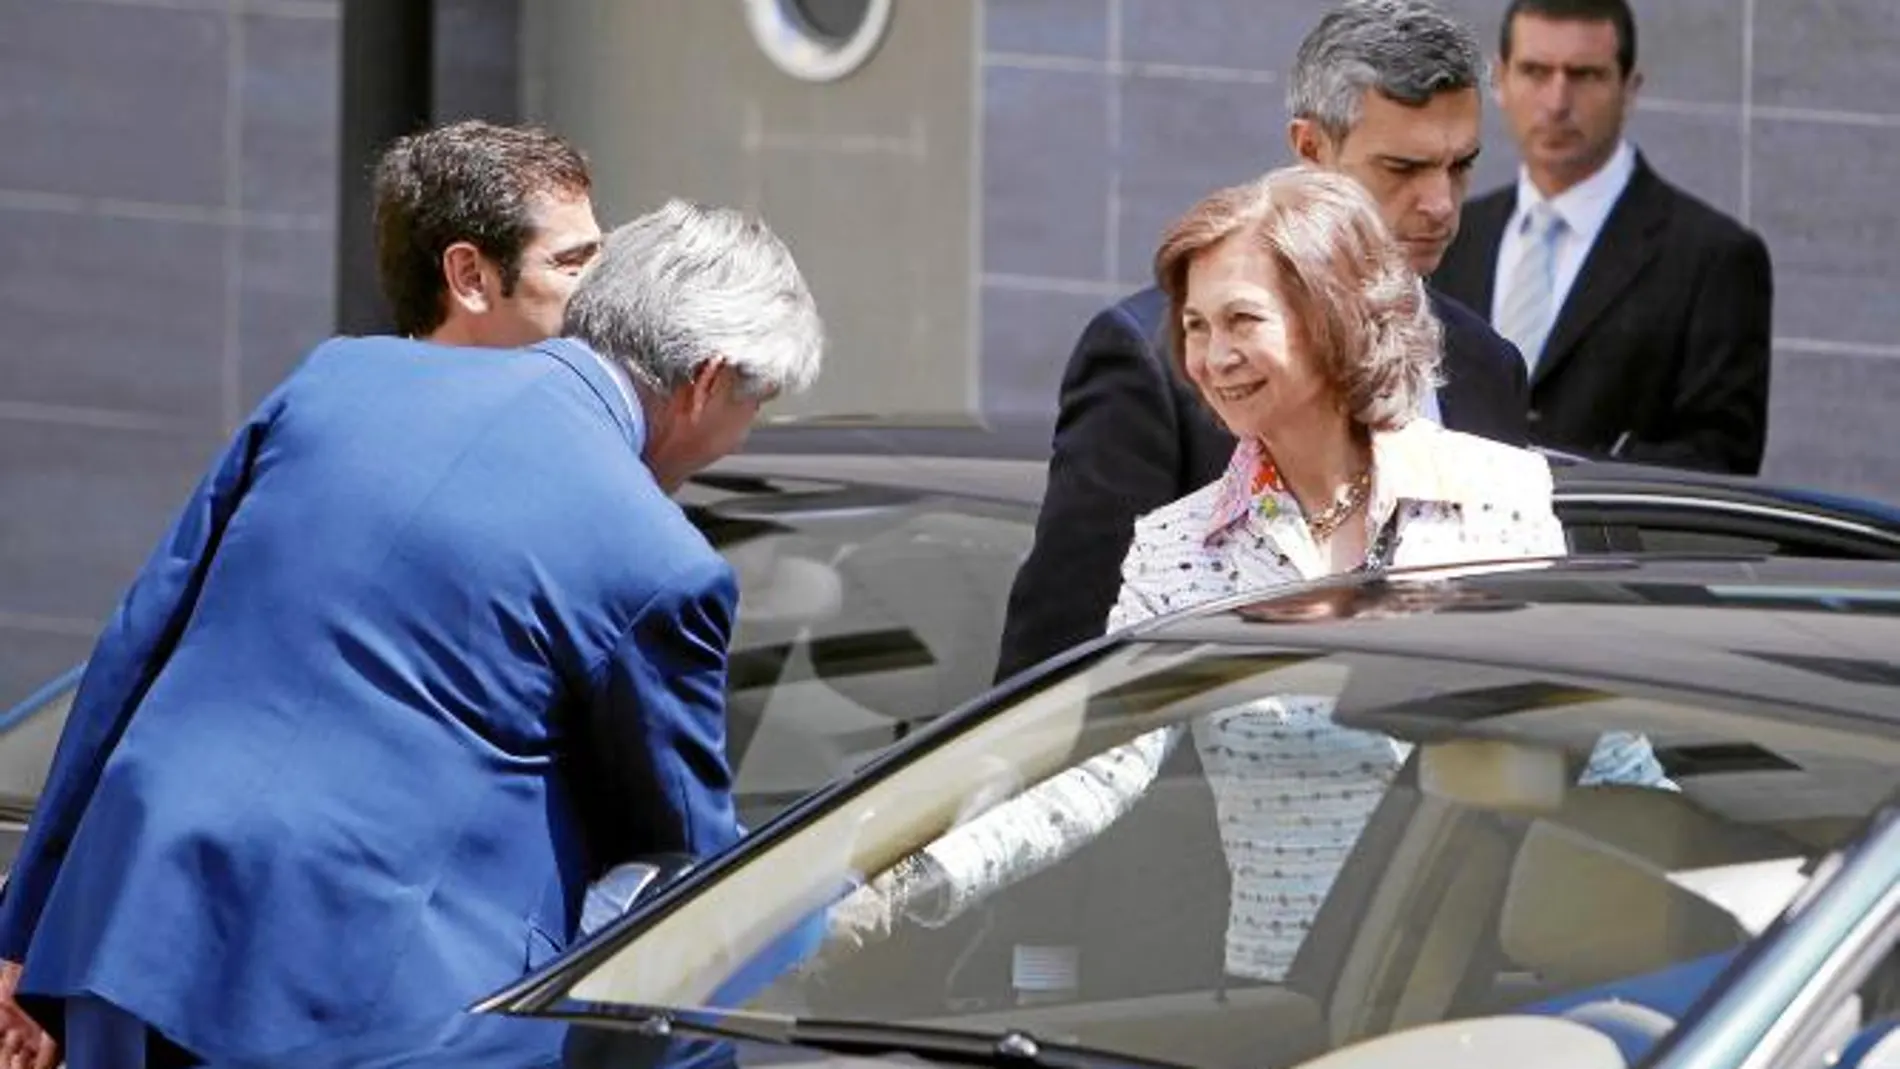 Doña Sofía acudió al Hospital USP San José de Madrid tras la operación para ver cómo se encontraba el Rey y se fue en torno a las 12:30 horas, sin hacer comentarios a la Prensa